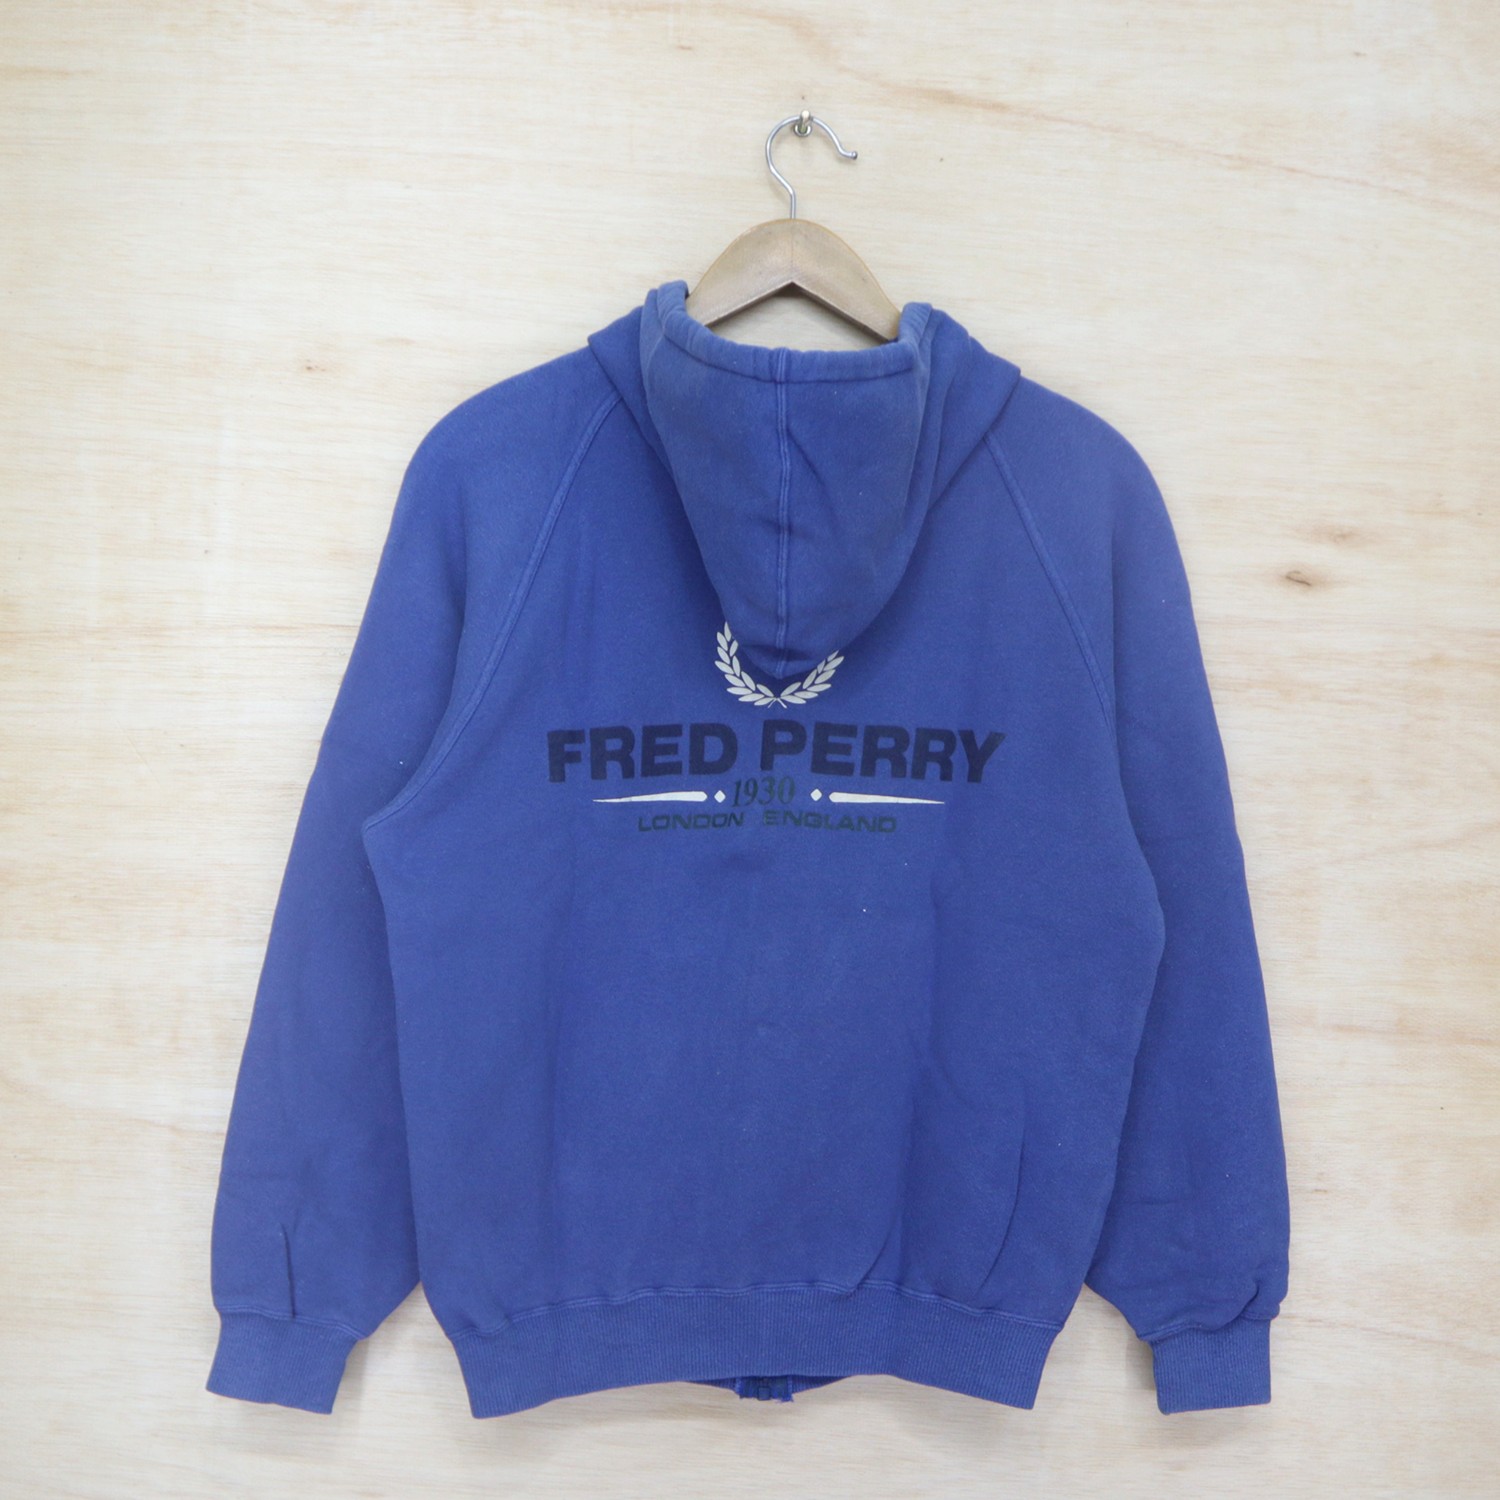 Vintage 90s FRED PERRY 1930 London England Big Logo Sweater Sweatshirt Hoodie Made In Japan - 6